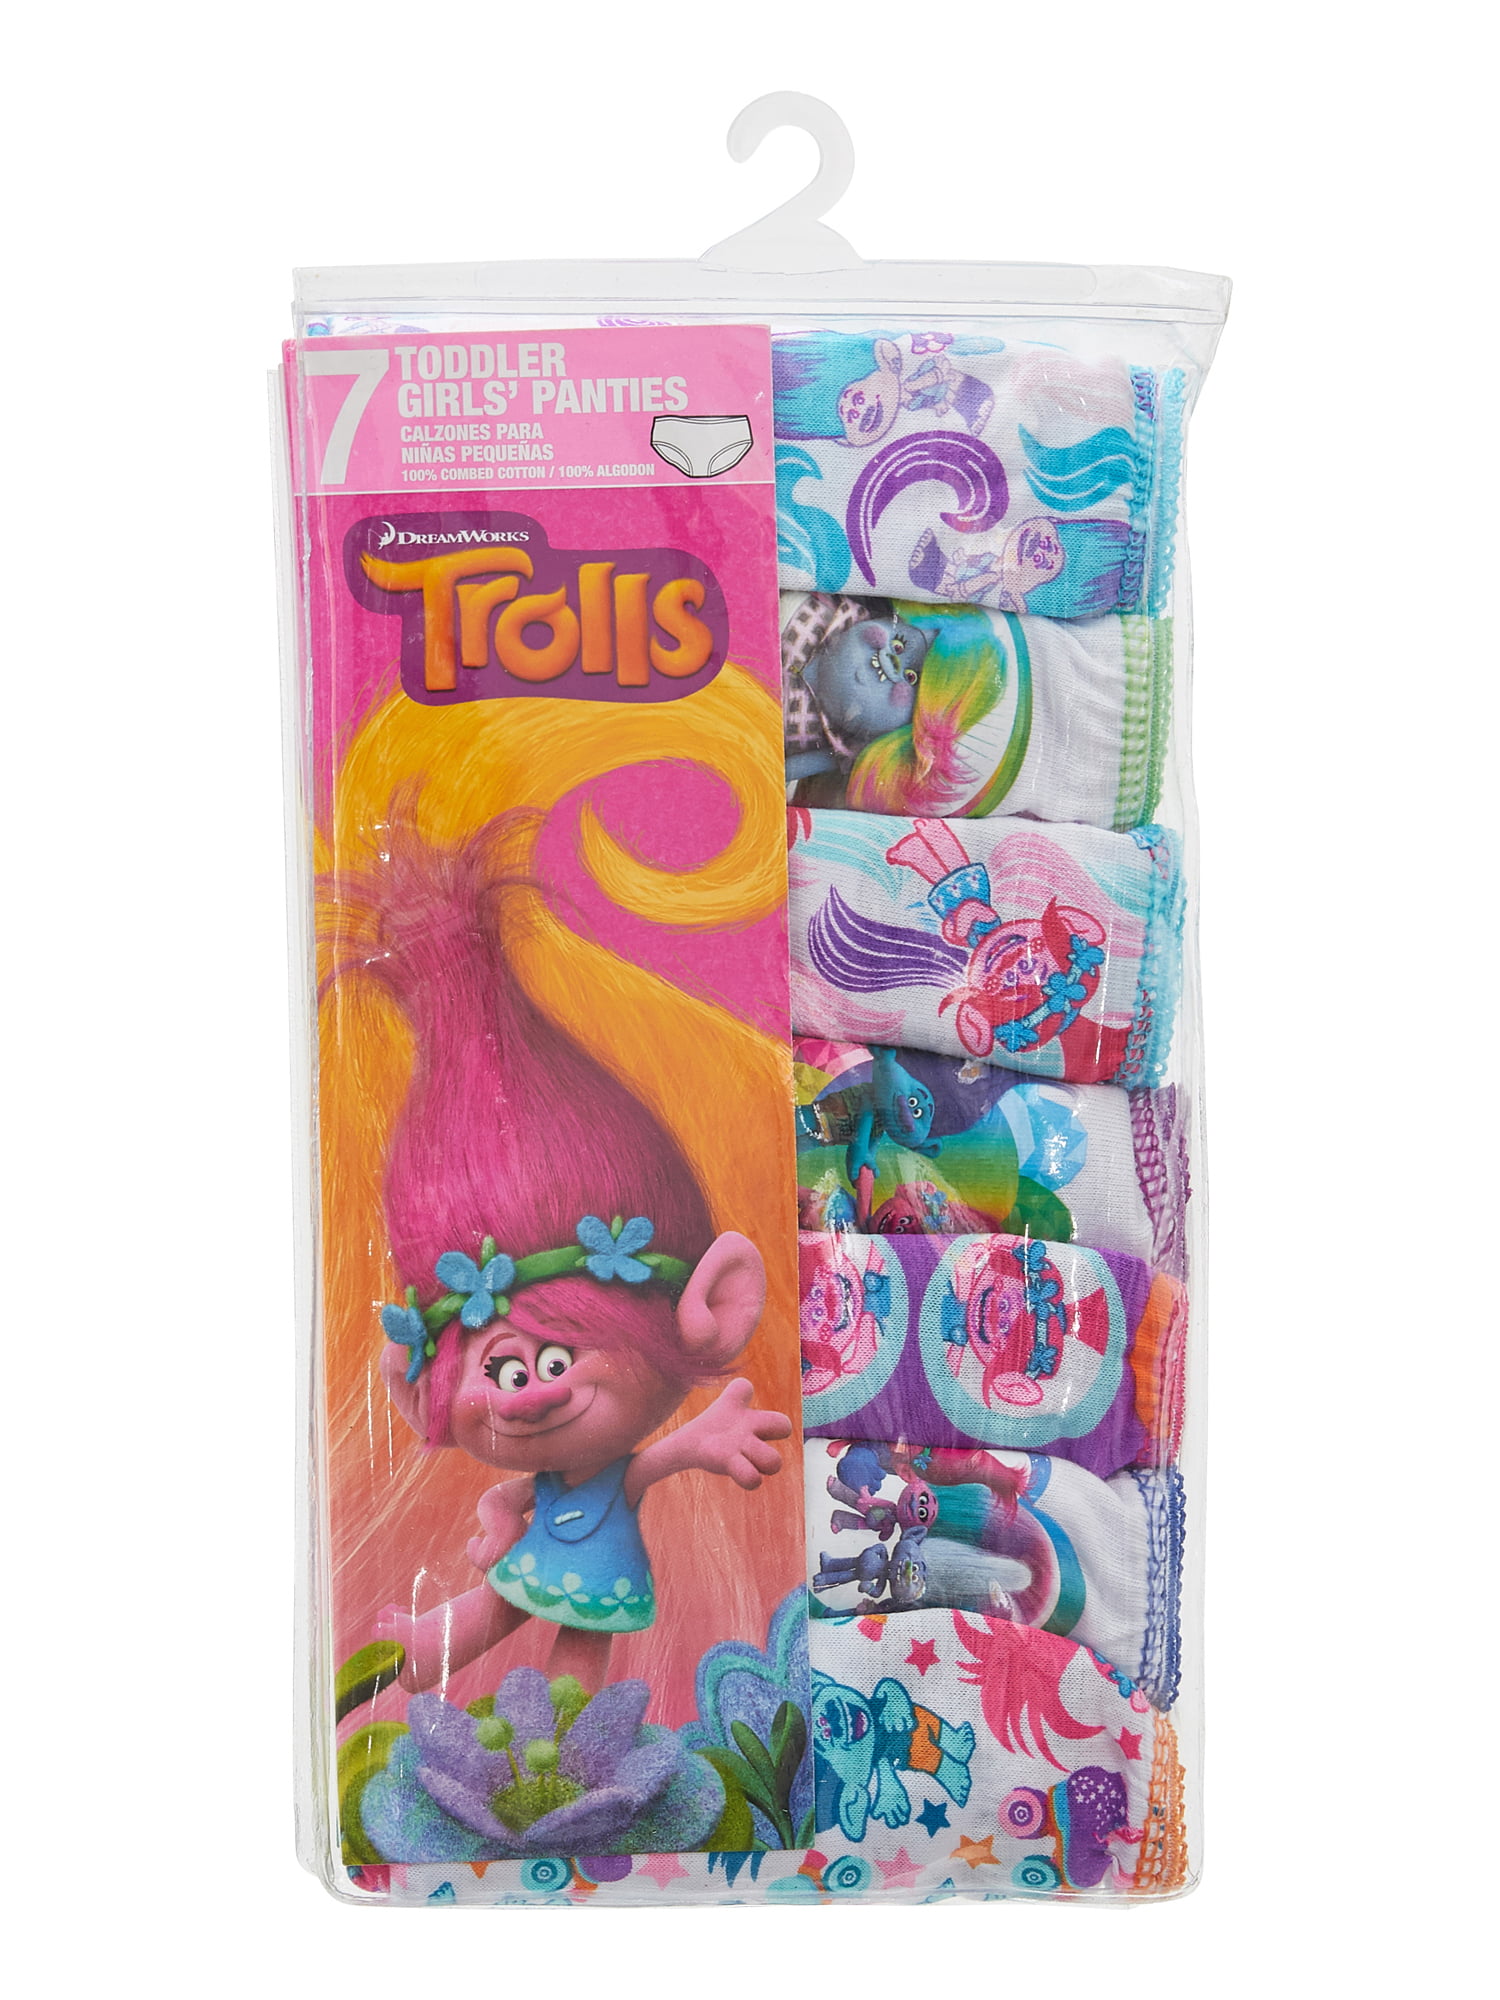 2-DREAMWORKS Trolls Girls 7 Pack Briefs Undies 4T Multicolor Underwear  Toddler нижнее белье V109723454 купить по выгодной цене в интернет-магазине   с доставкой